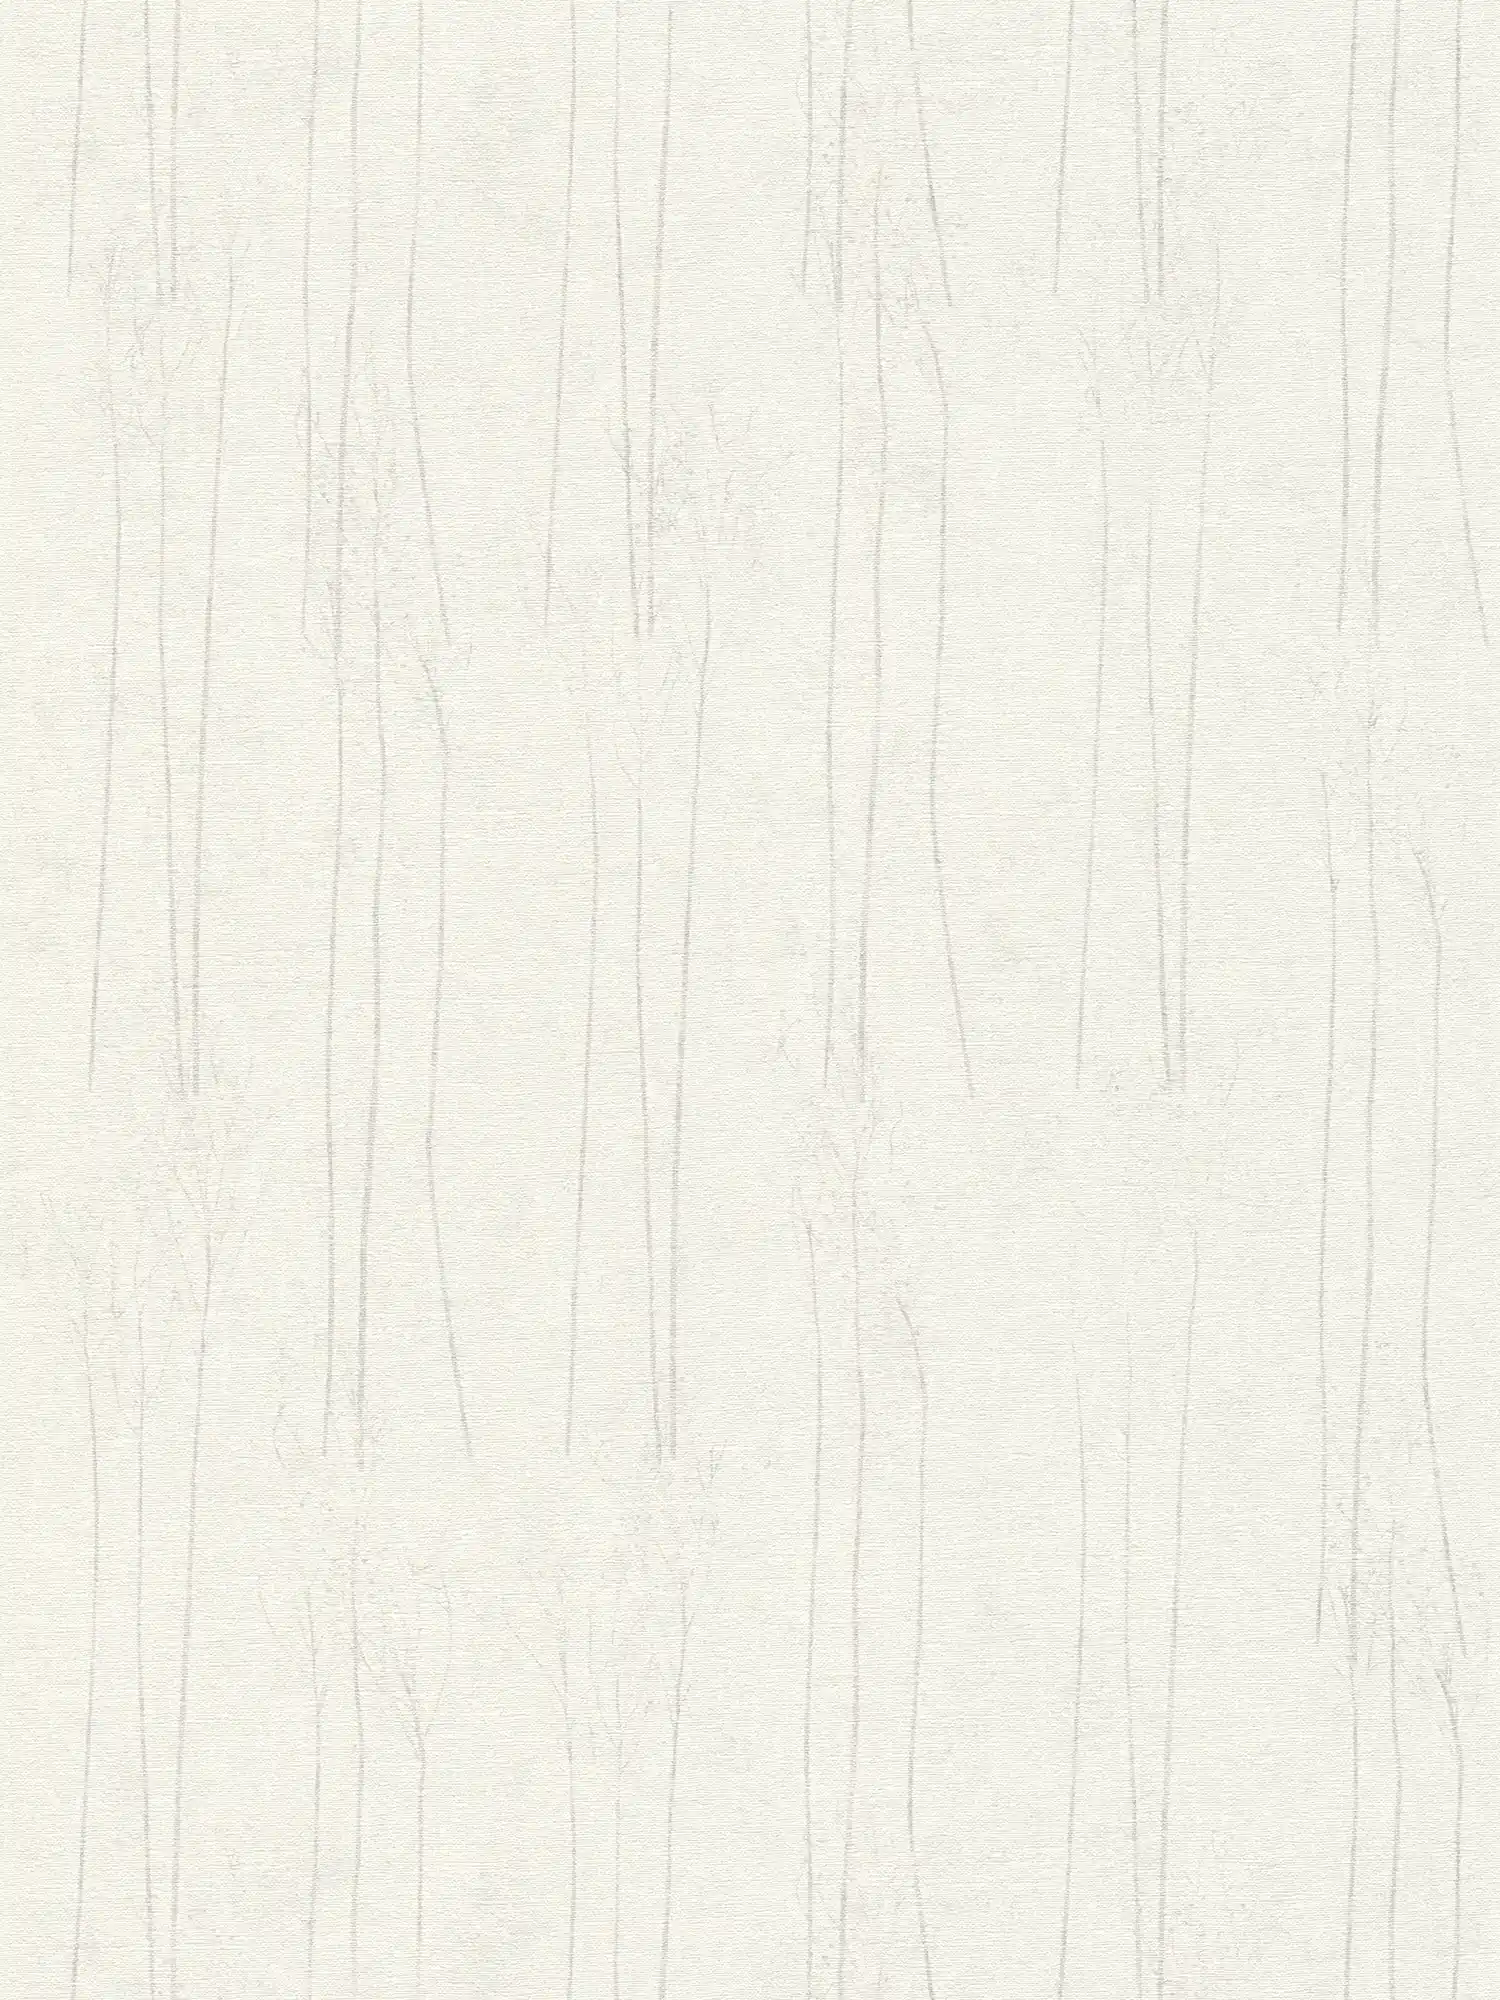 Weiße Tapete Scandi Stil mit Naturmuster – Grau, Weiß
